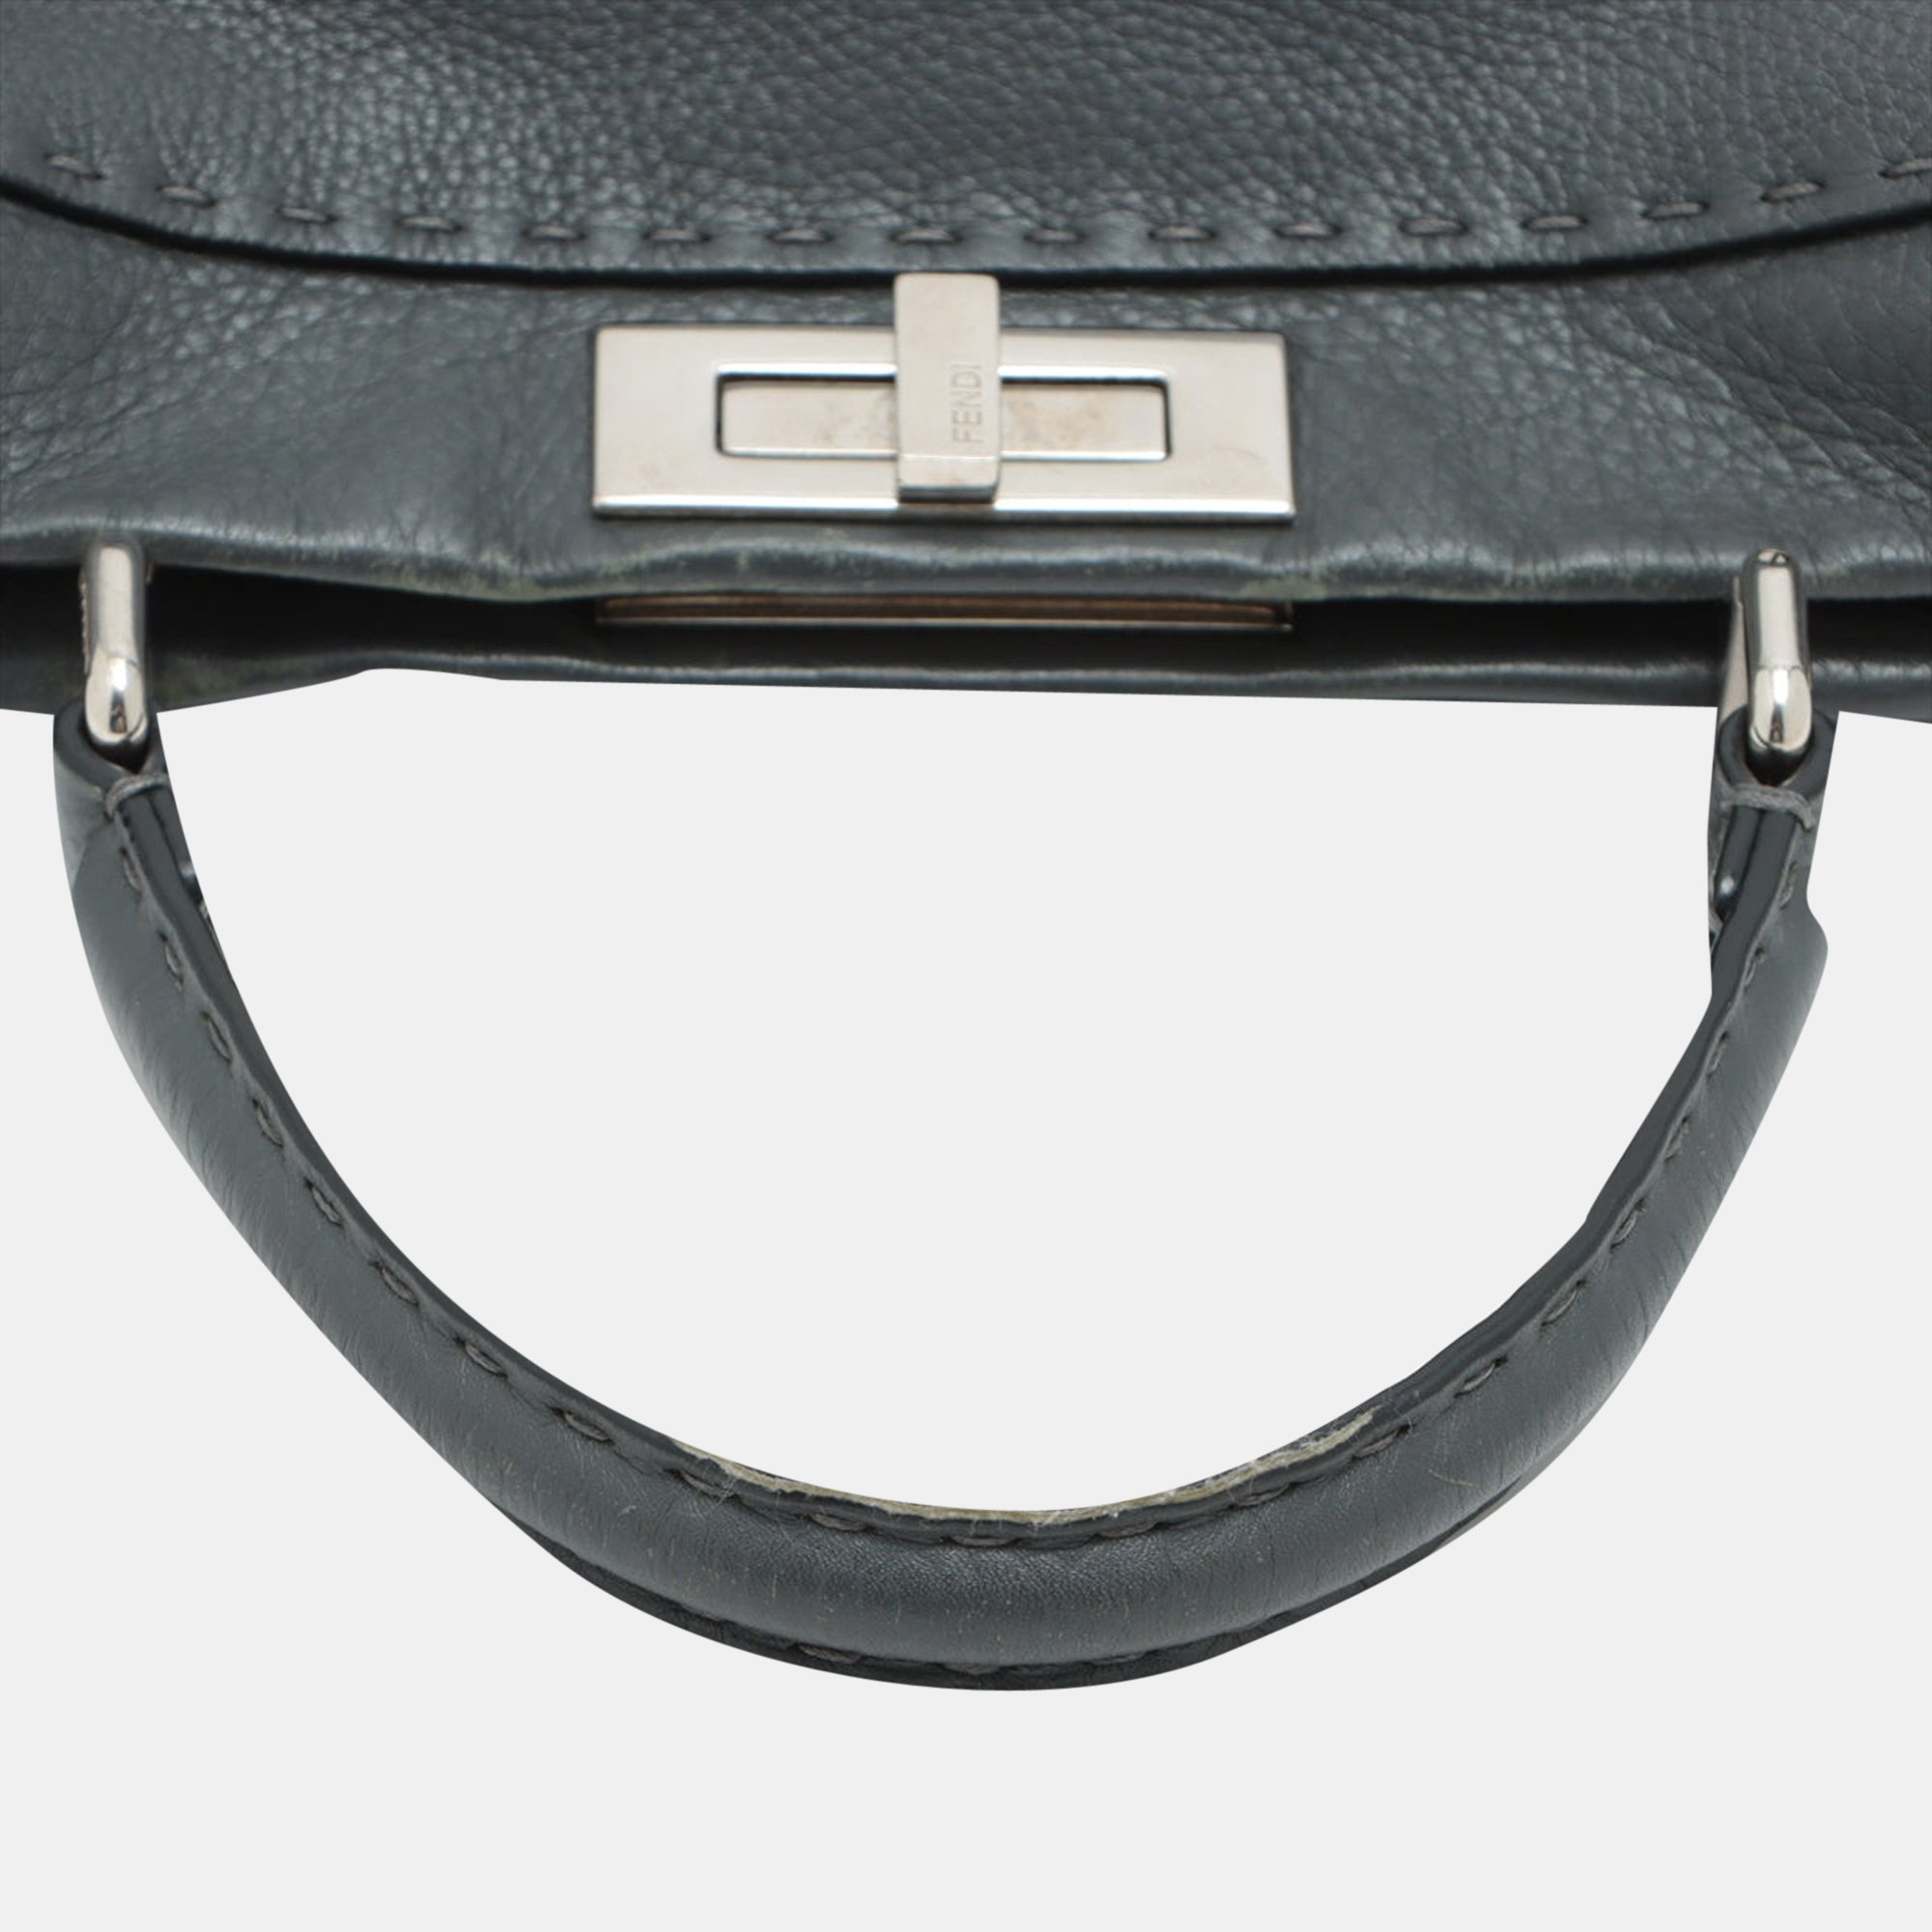 

Fendi PEEKABOO REGULAR Selleria Leather 2way handbag Grey 8BN290